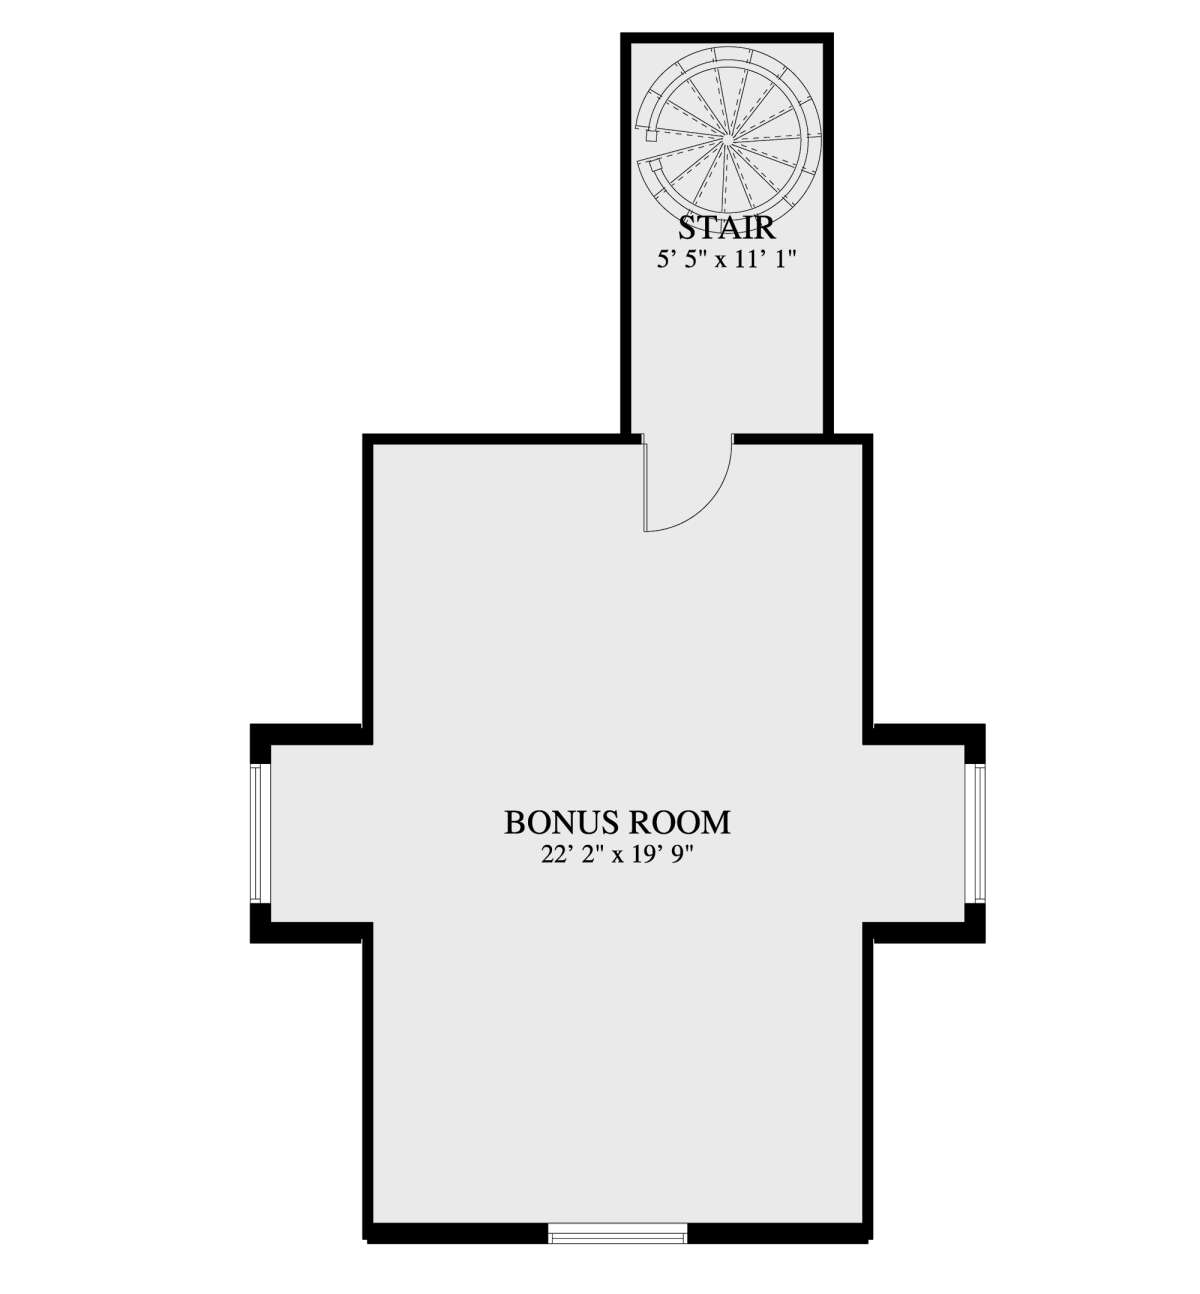 Bonus Room for House Plan #2802-00110